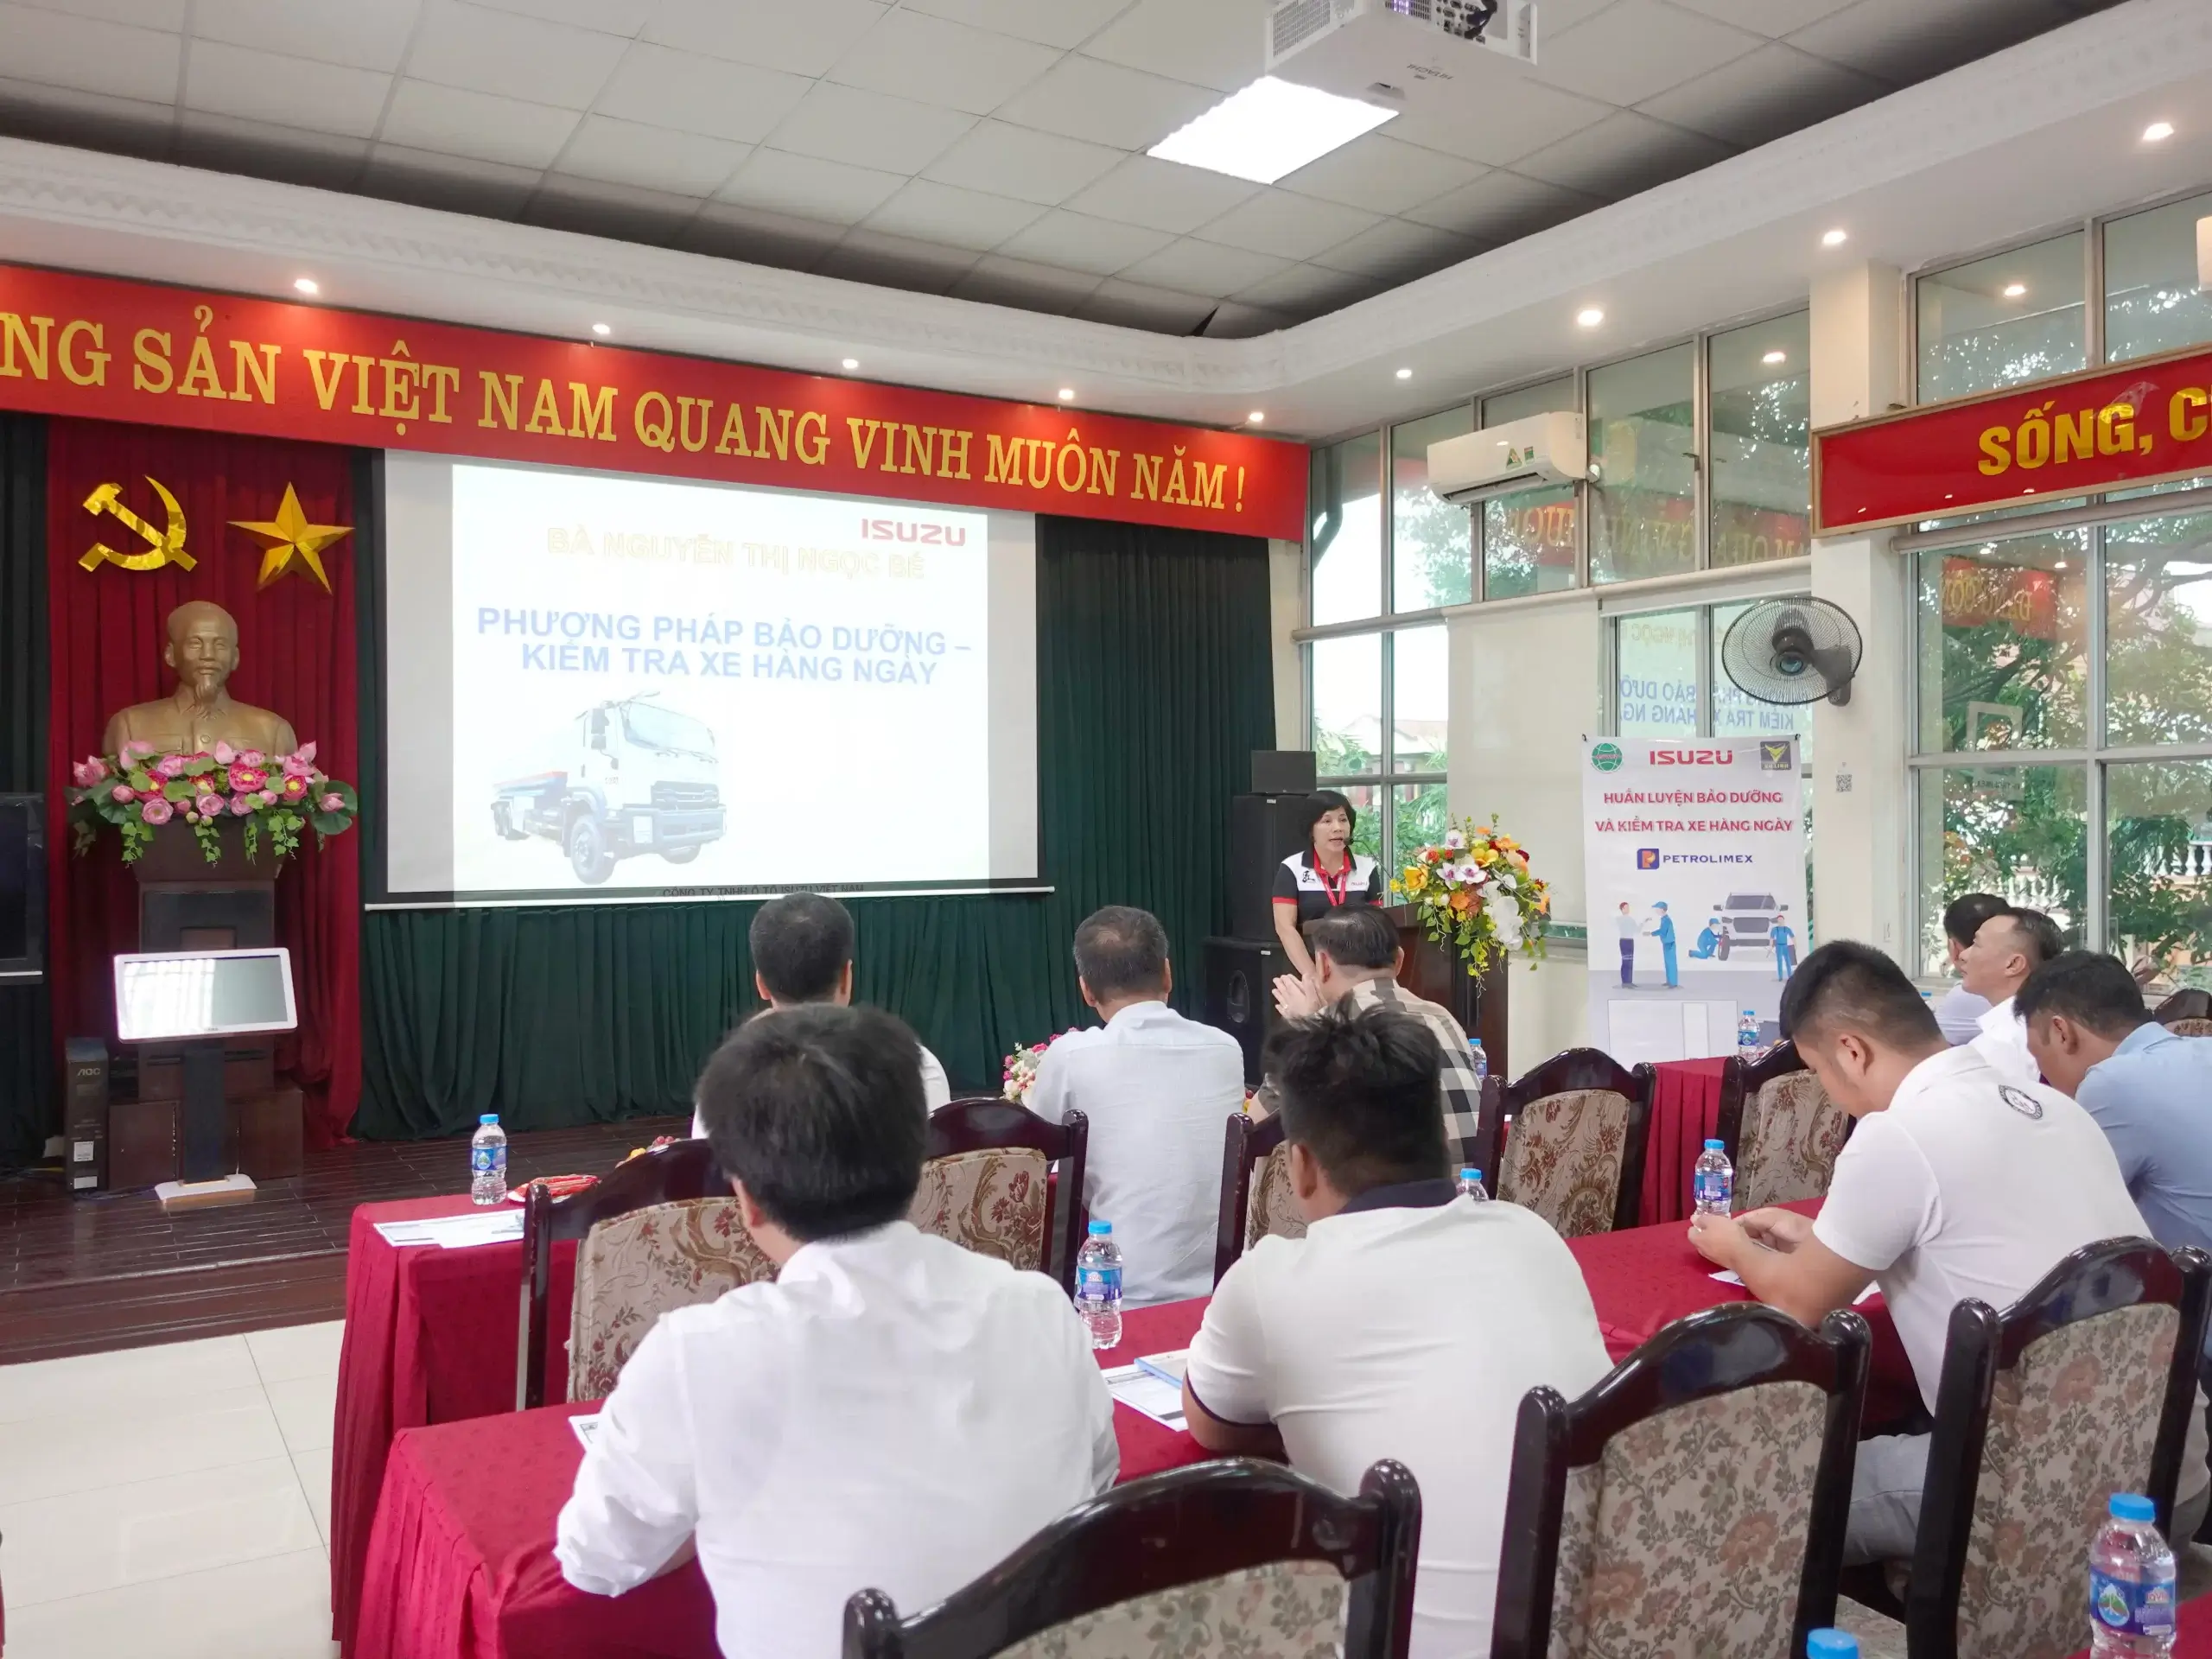 Mở đầu chương trình , Ban lãnh đạo của Isuzu Việt Nam đã có những lời chia sẻ để khai mạc buổi huấn luyện 